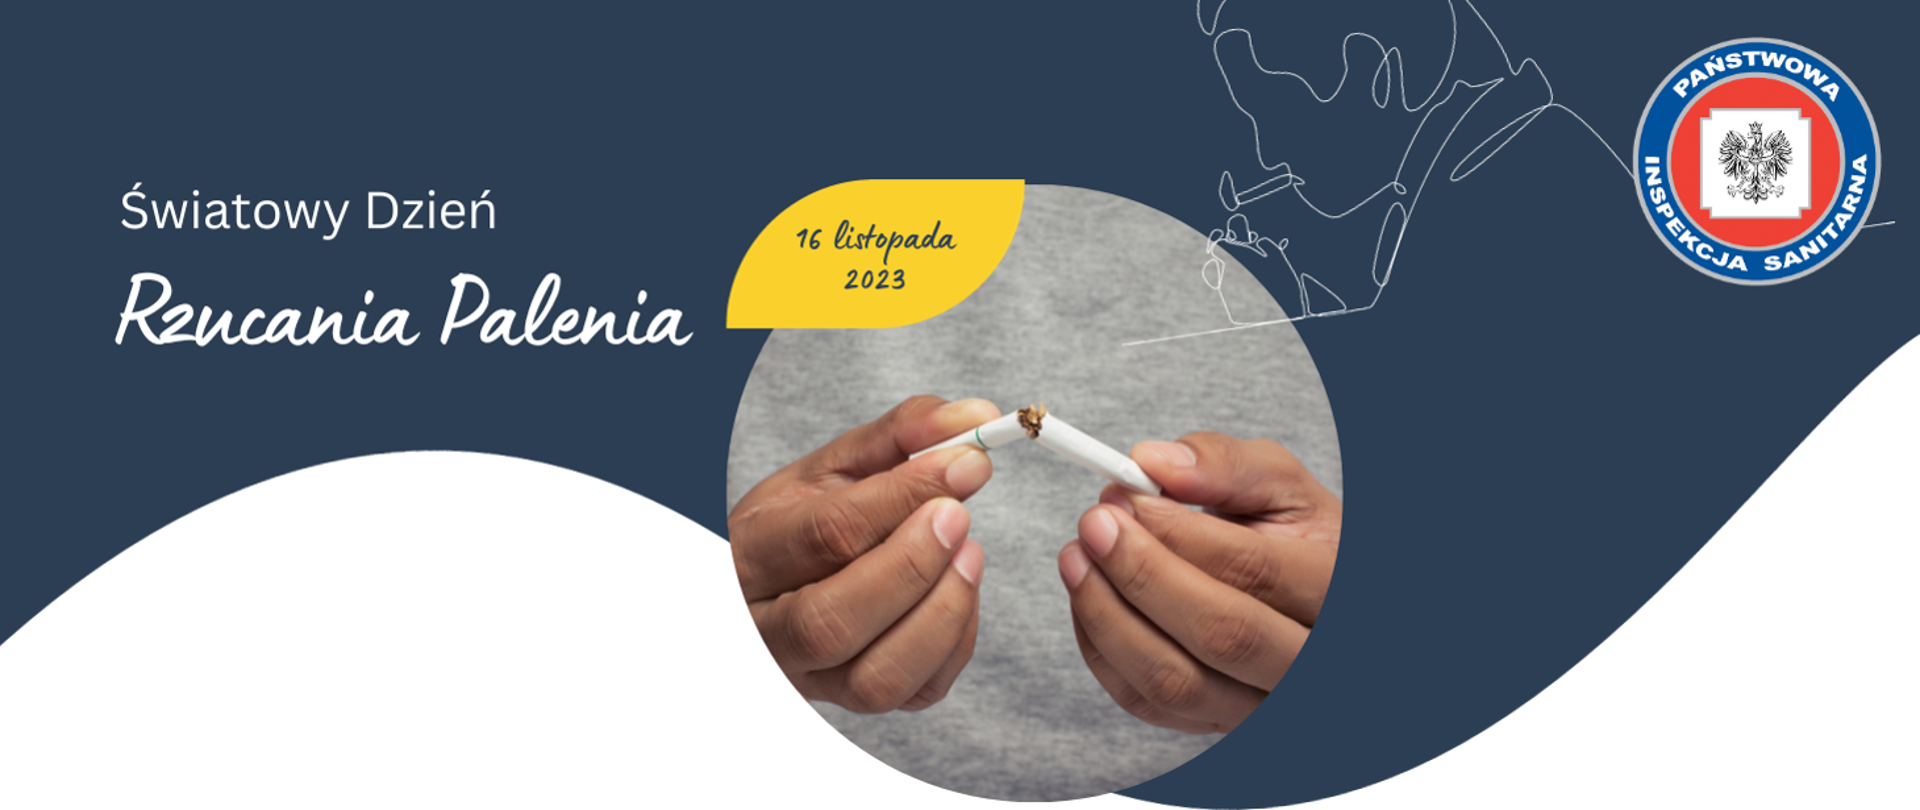 Światowy Dzień Rzucenia Palenia  - 16 listopad 2023 r.